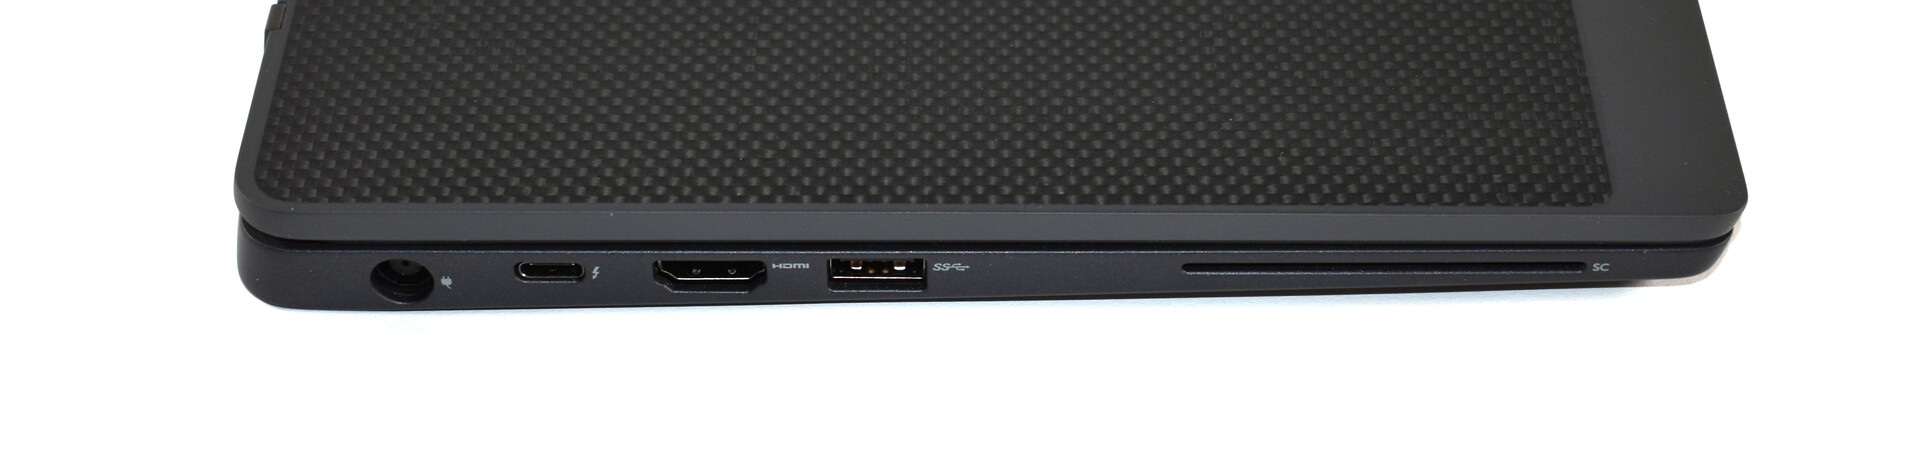 Đánh giá laptop Dell Latitude 7300: Chưa khai thác hết, Chuyên trang tư vấn về laptop